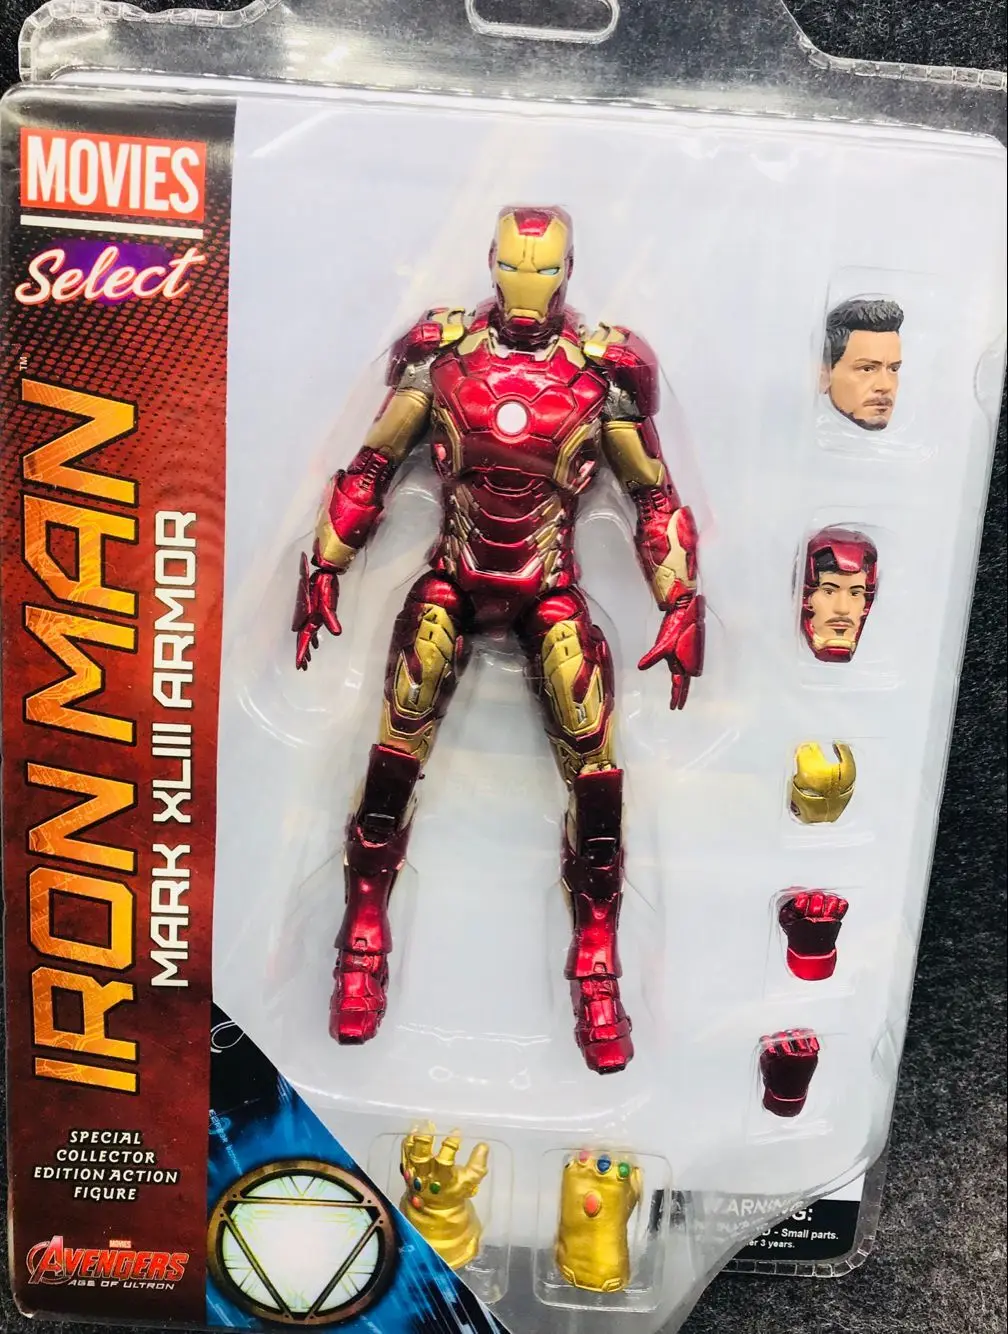 

Оригинальная экшн-фигурка Marvel Select Avengers со знаком Железного человека 45 супергерой Железный человек модель игрушки 18 см